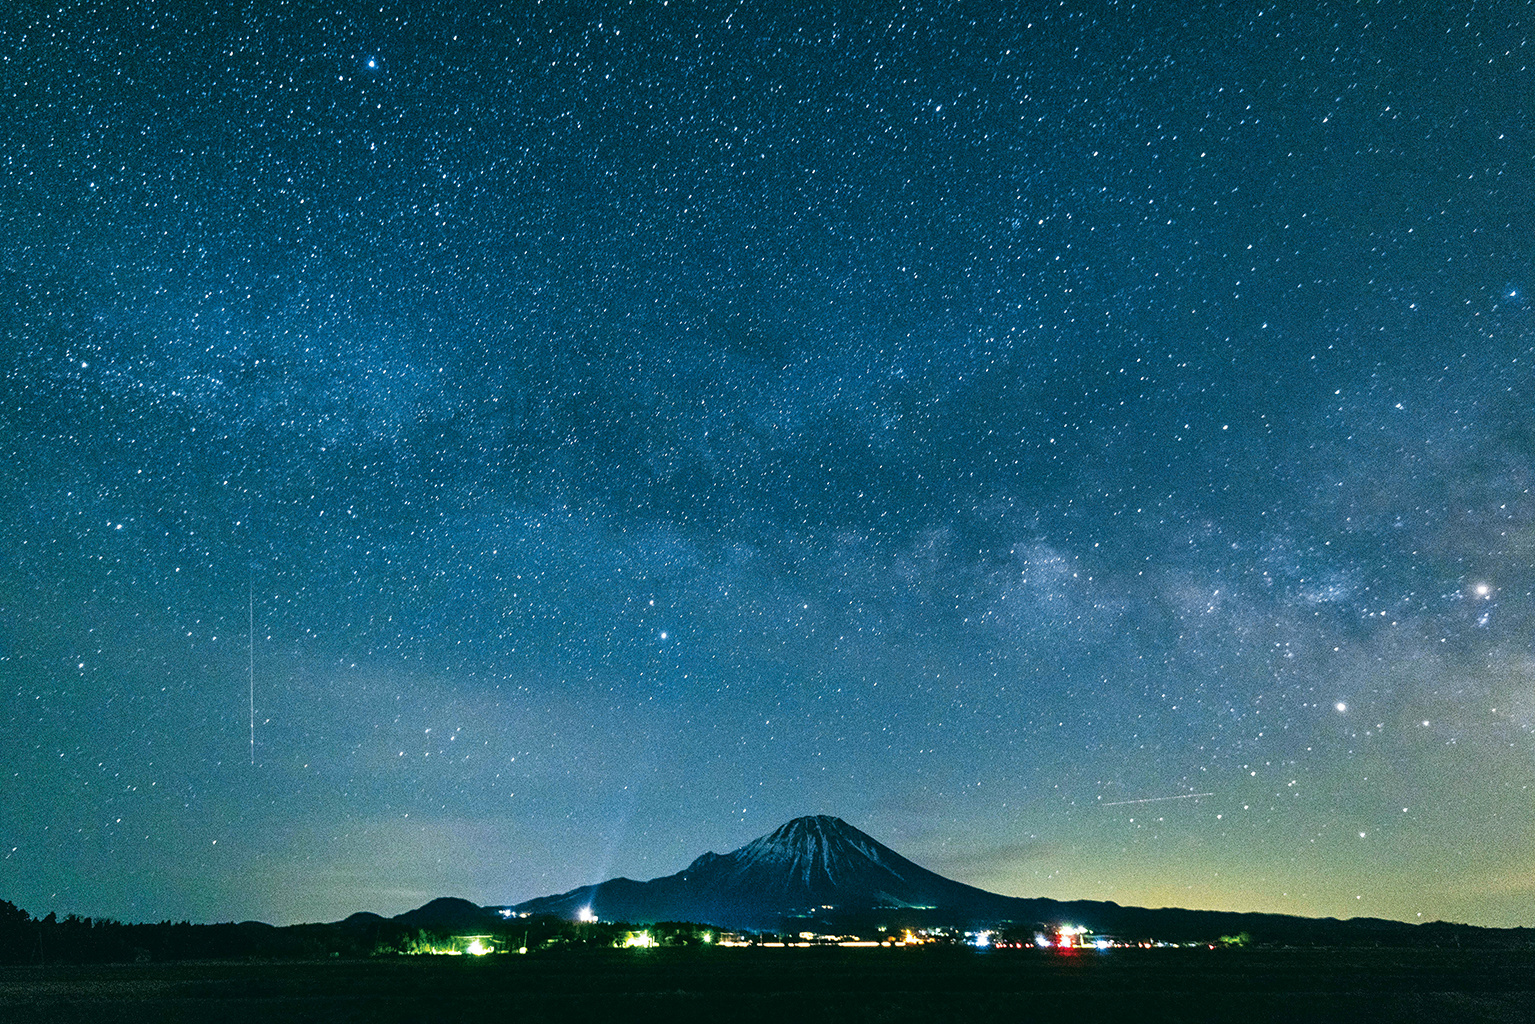 Imai Printing News 鳥取県の星空をまとめた写真集 日本一人が少ないところの 日本一きれいな星空 登場